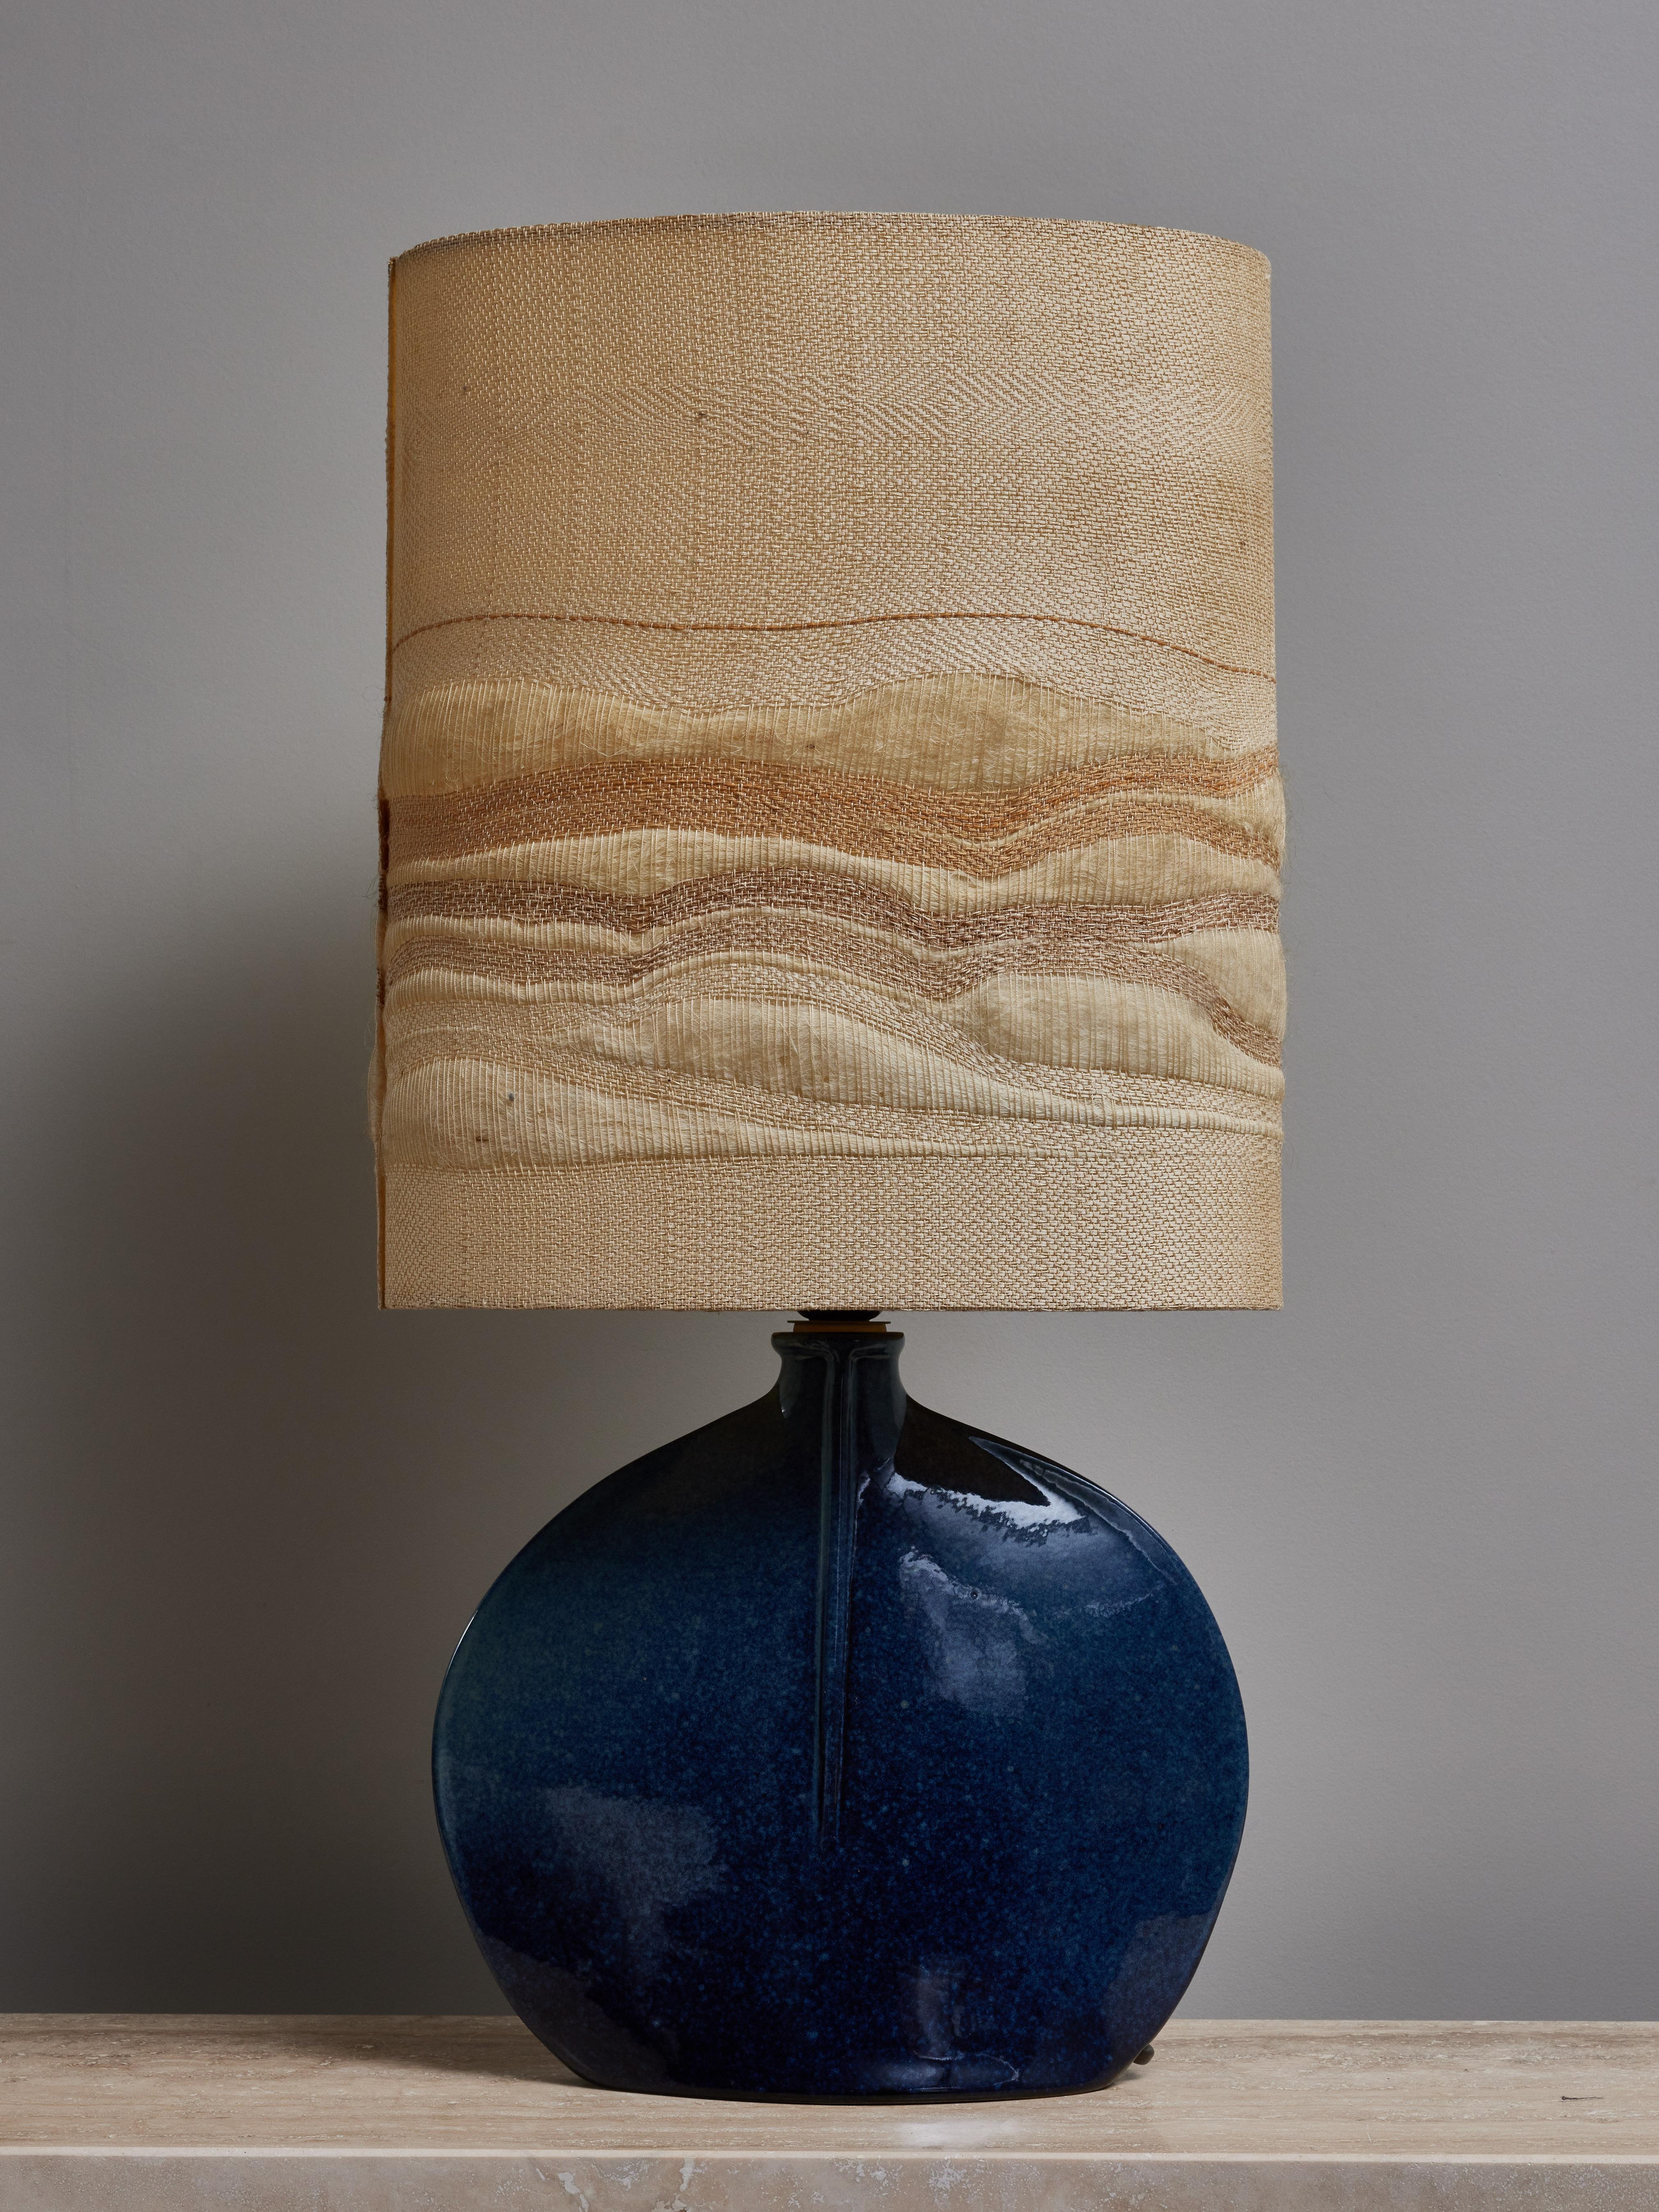 Elegante petite lampe de table en céramique émaillée, surmontée de l'abat-jour tissé d'origine.